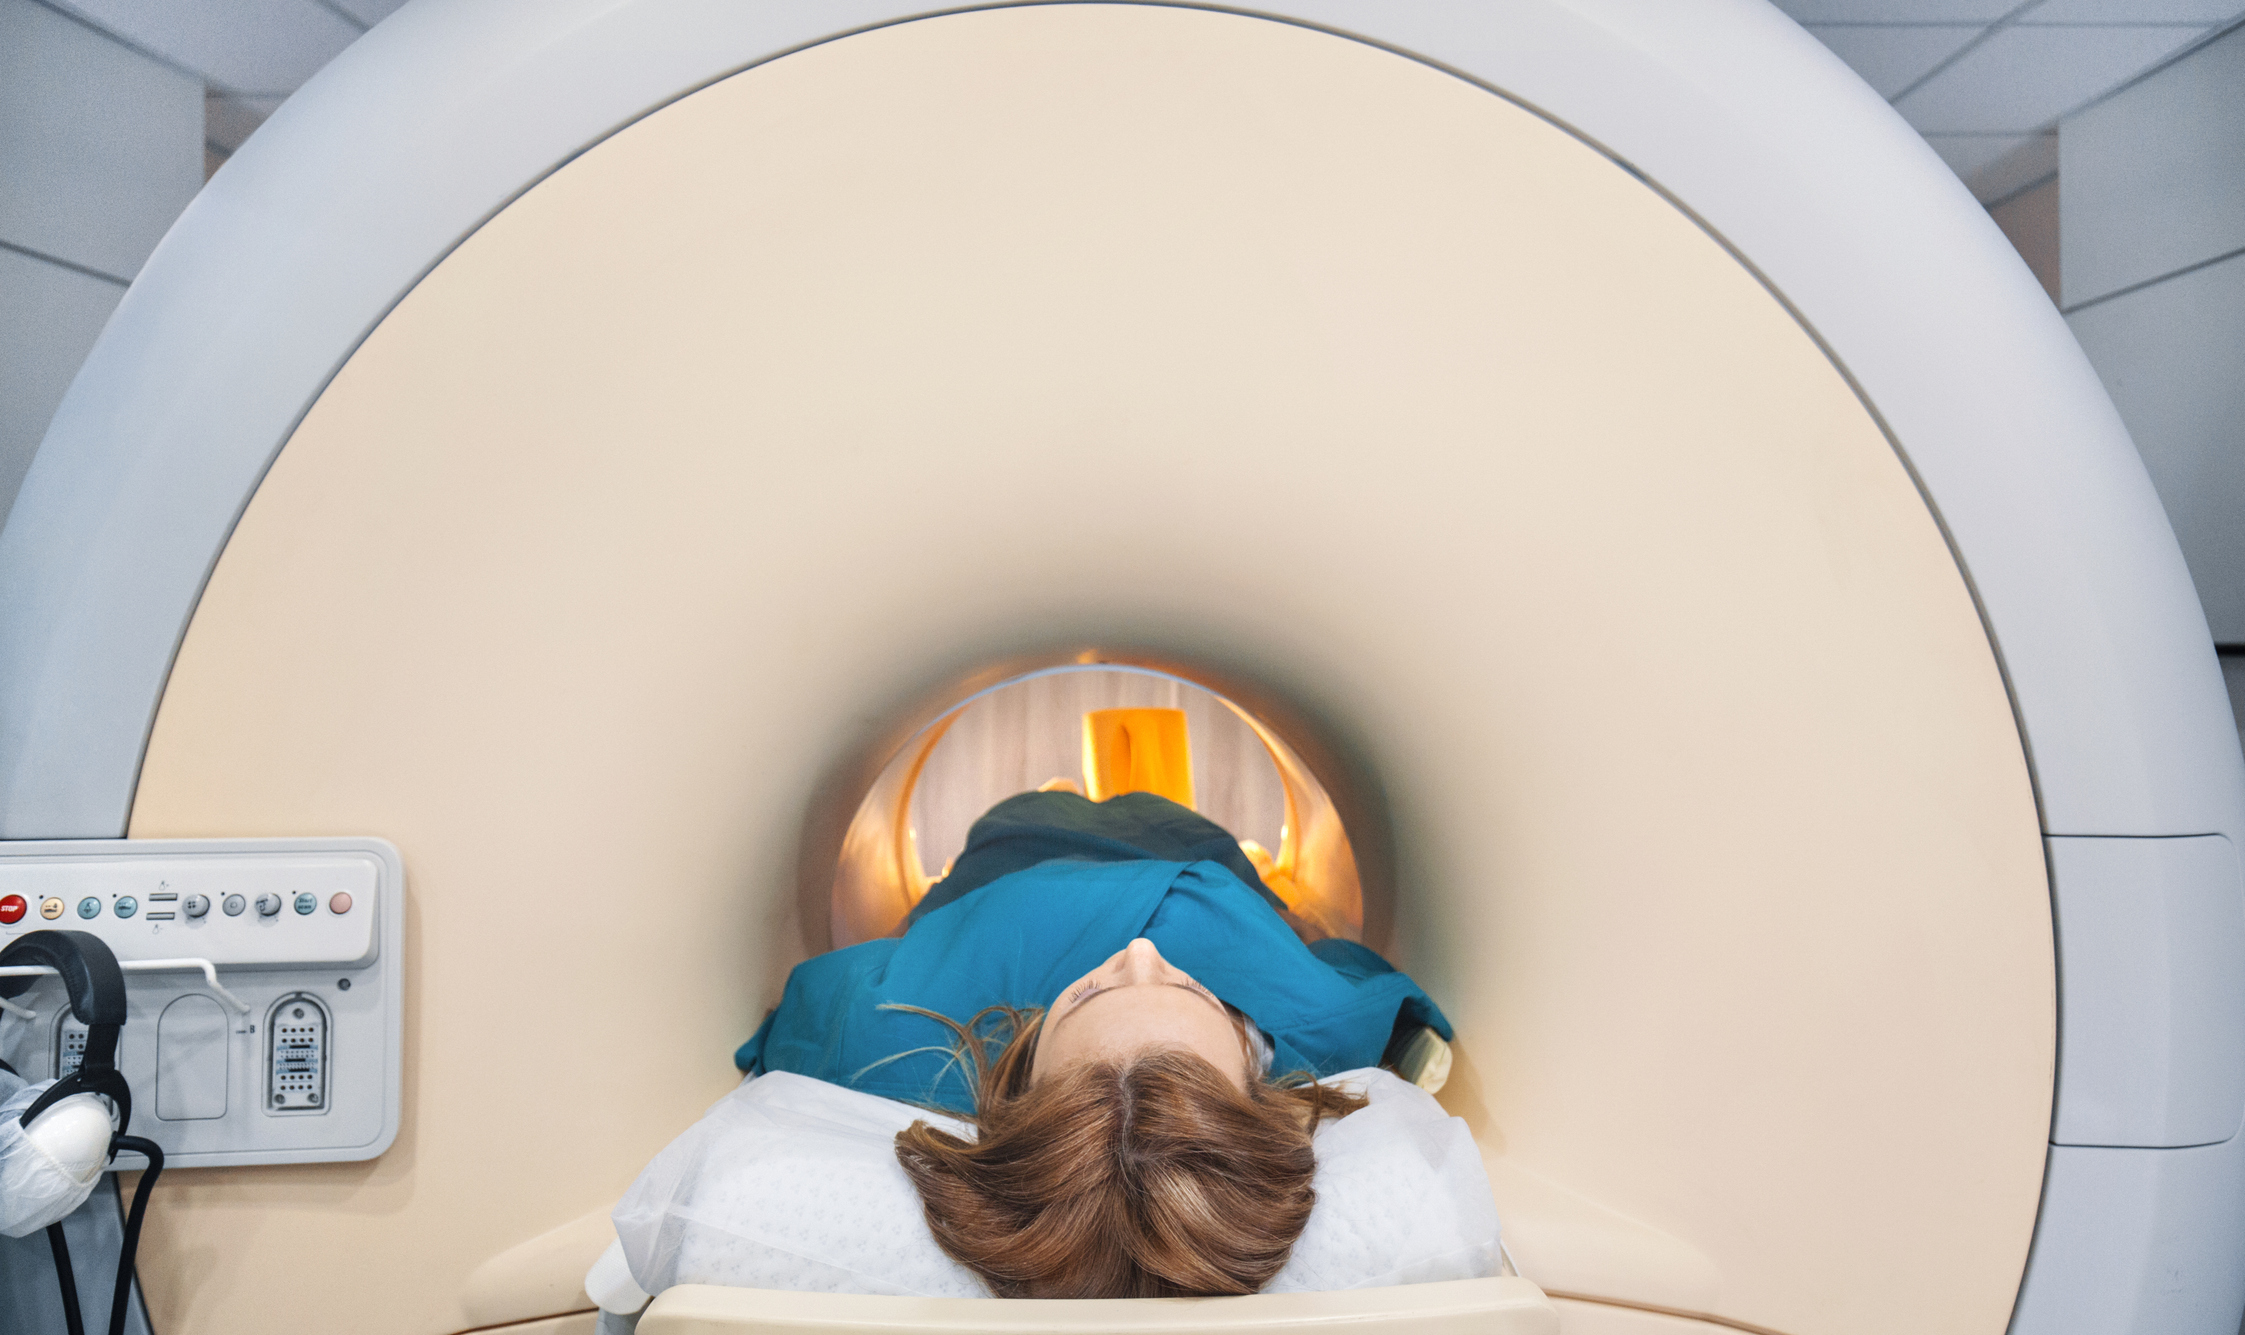 A woman enters an MRI scanner